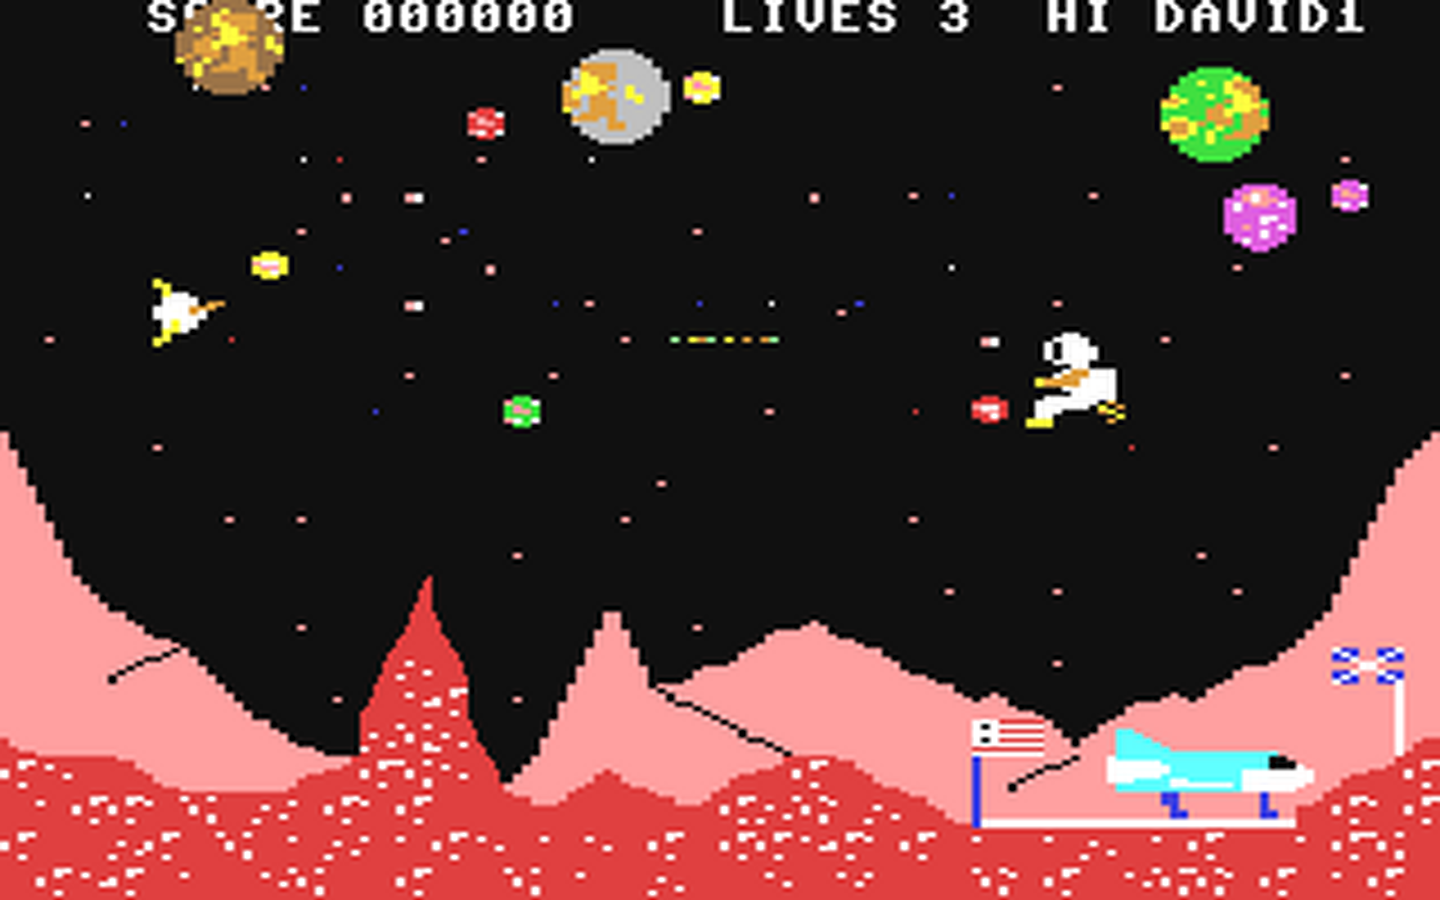 C64 GameBase Space_Walk Mastertronic 1984